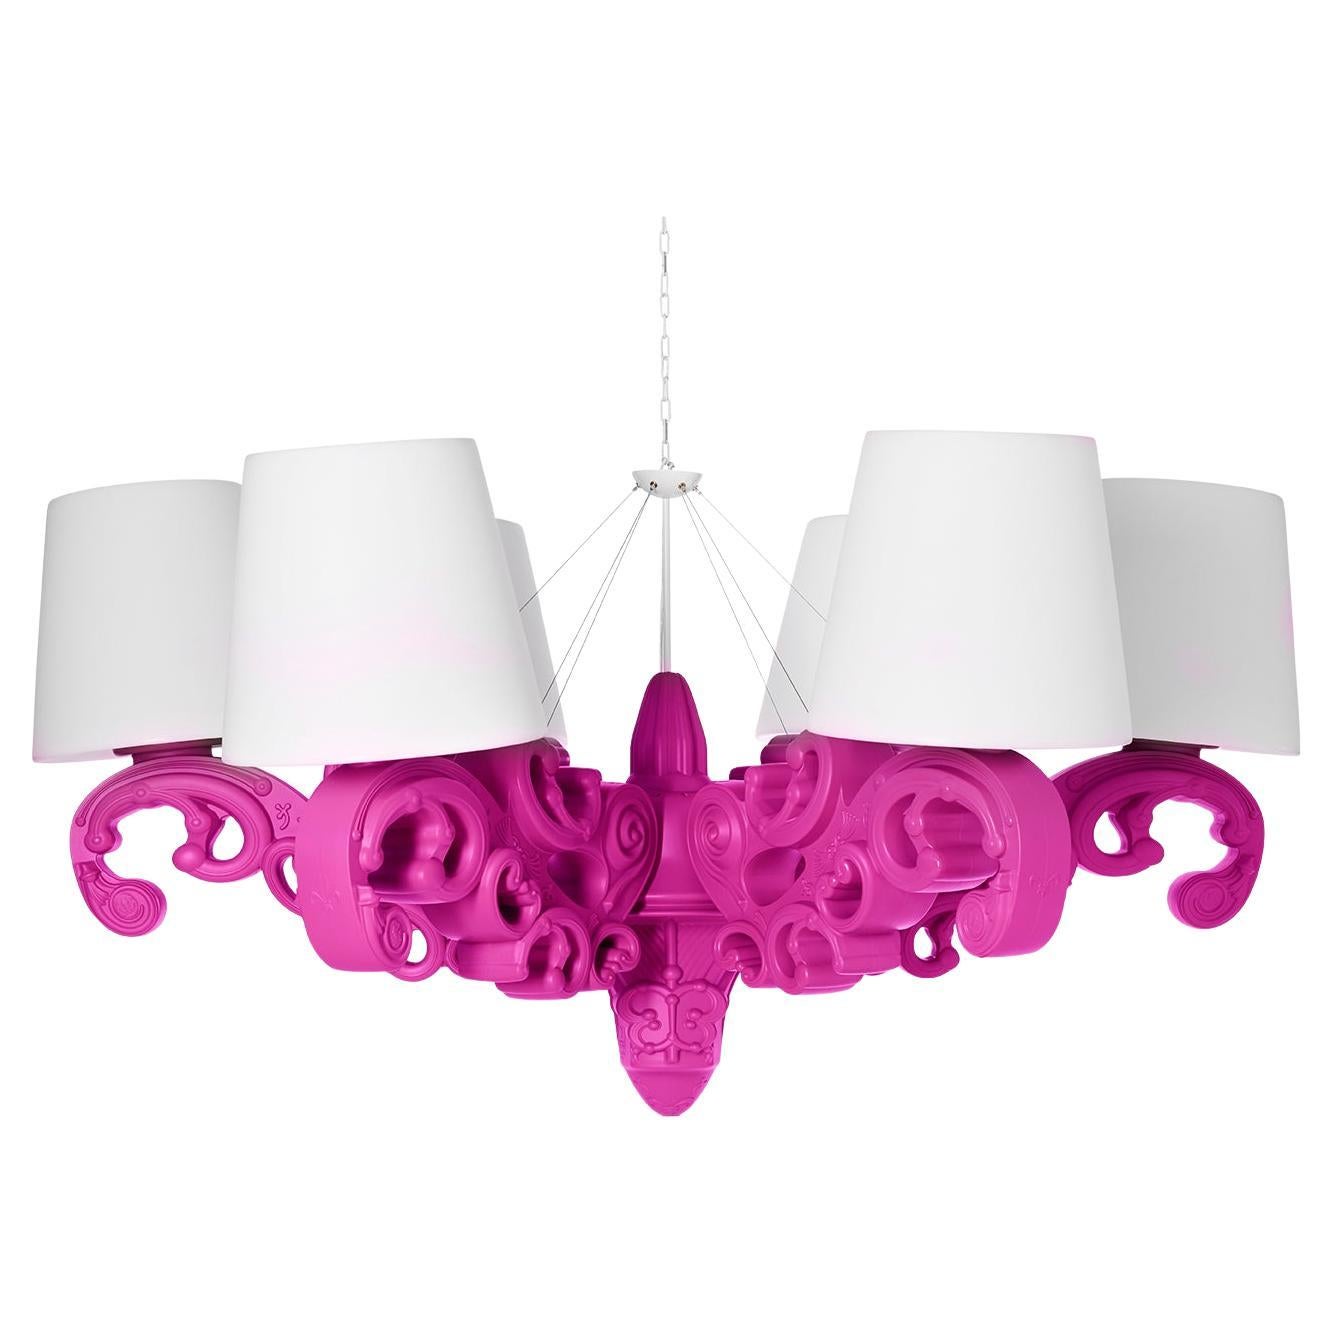 Lampe à suspension couronne d'amour en forme de glissière de couleur fuchsia par Moro, Pigatti